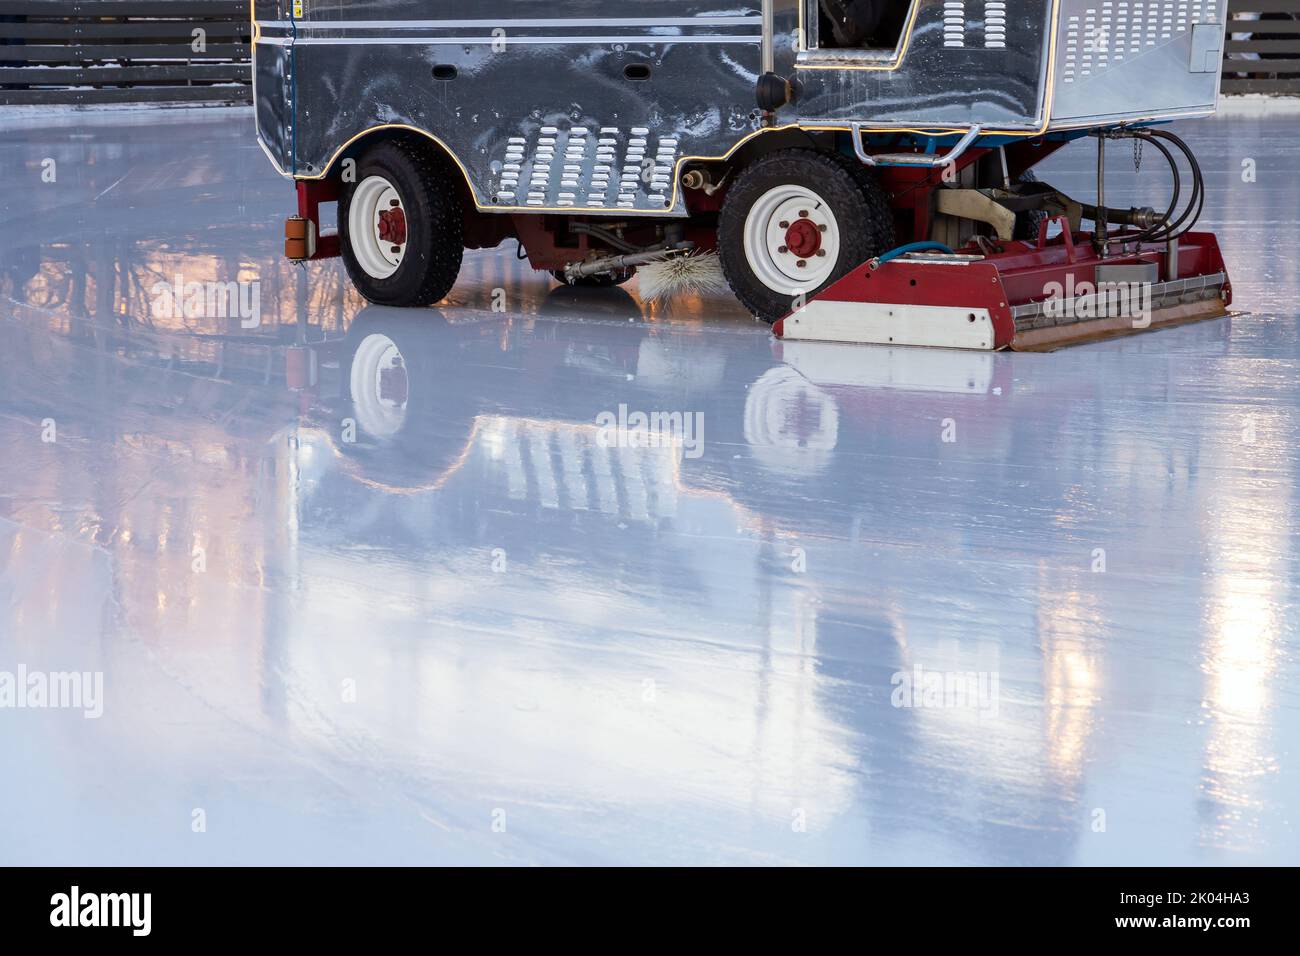 È in corso il servizio di pattinaggio su ghiaccio, macchinari per la ristrutturazione del ghiaccio in un'arena vuota Foto Stock